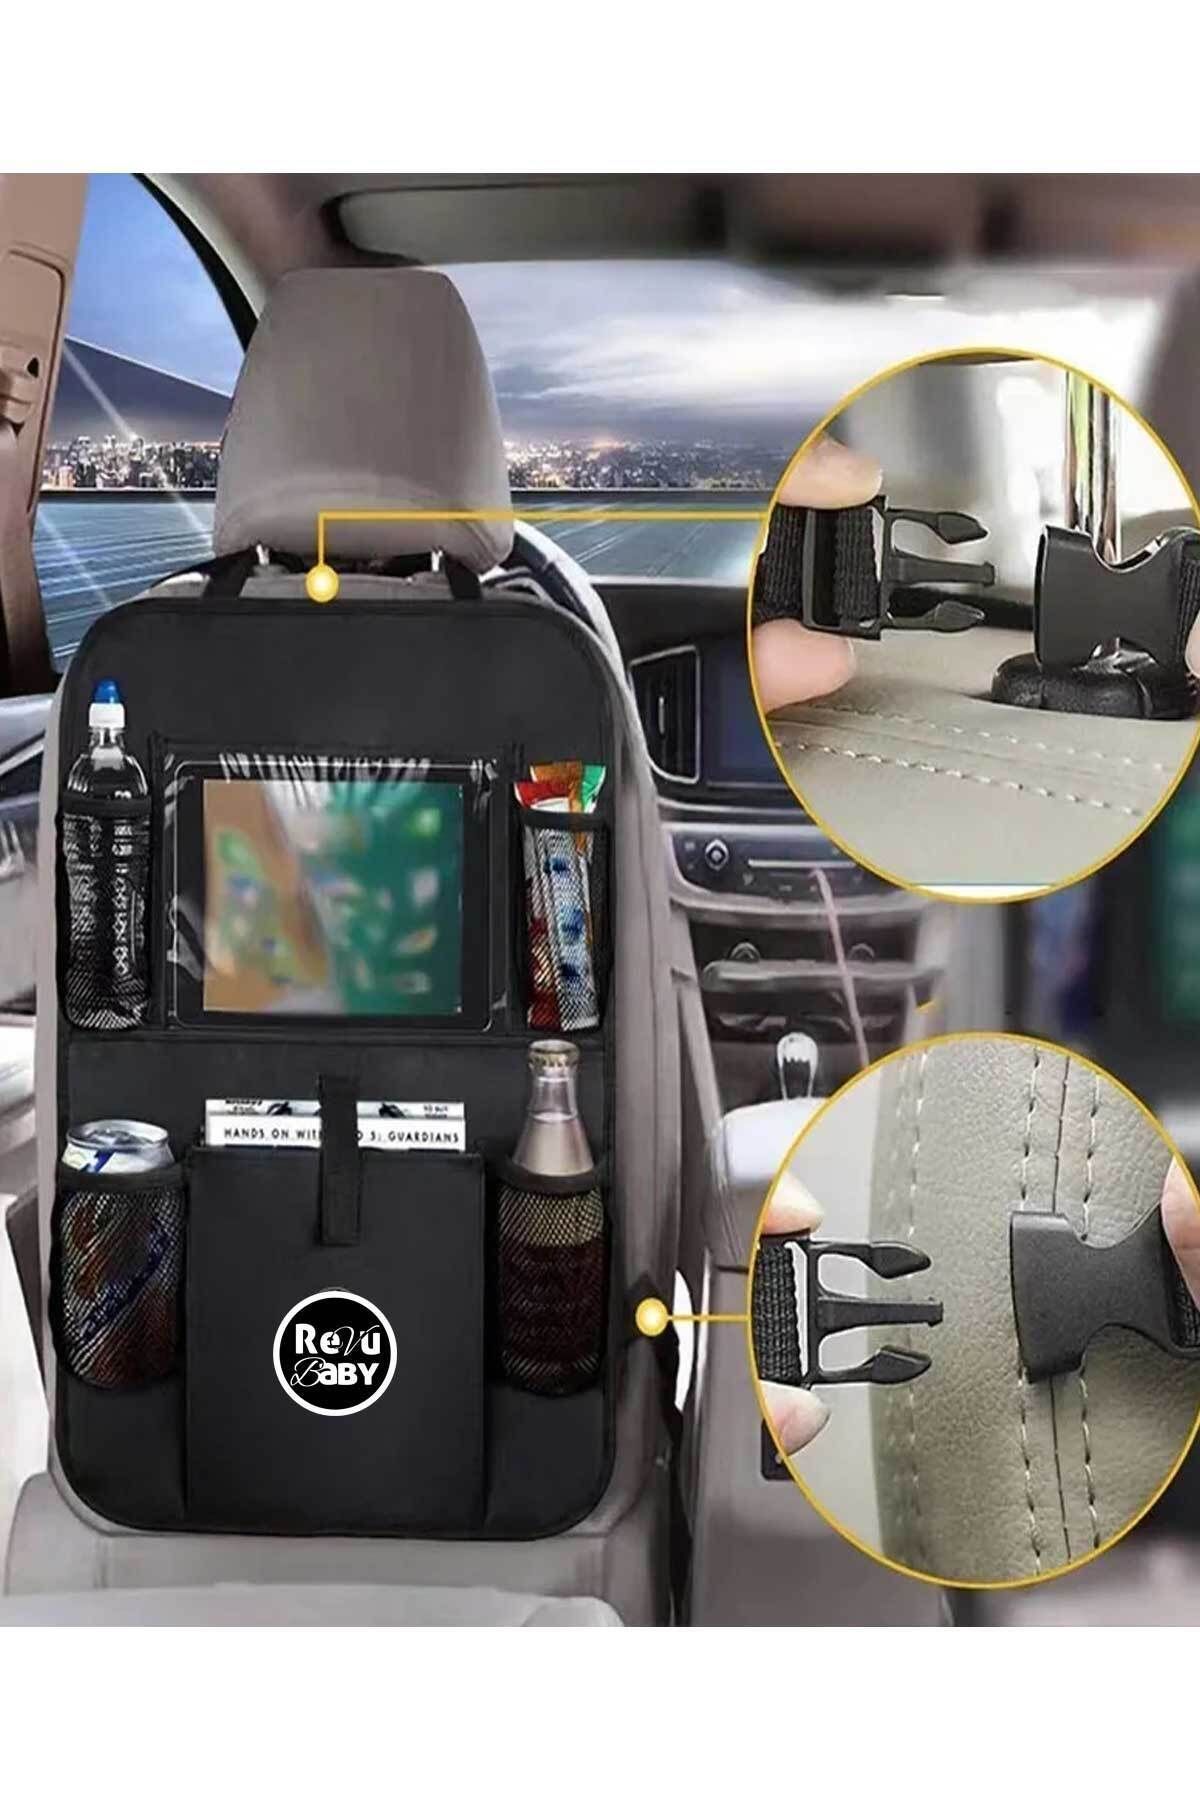 RevuBaby Araç Koltuk Arkası Organizer Tablet Telefon Tutucu Araba Içi Düzenleyici Oto Koltuk Tutucu